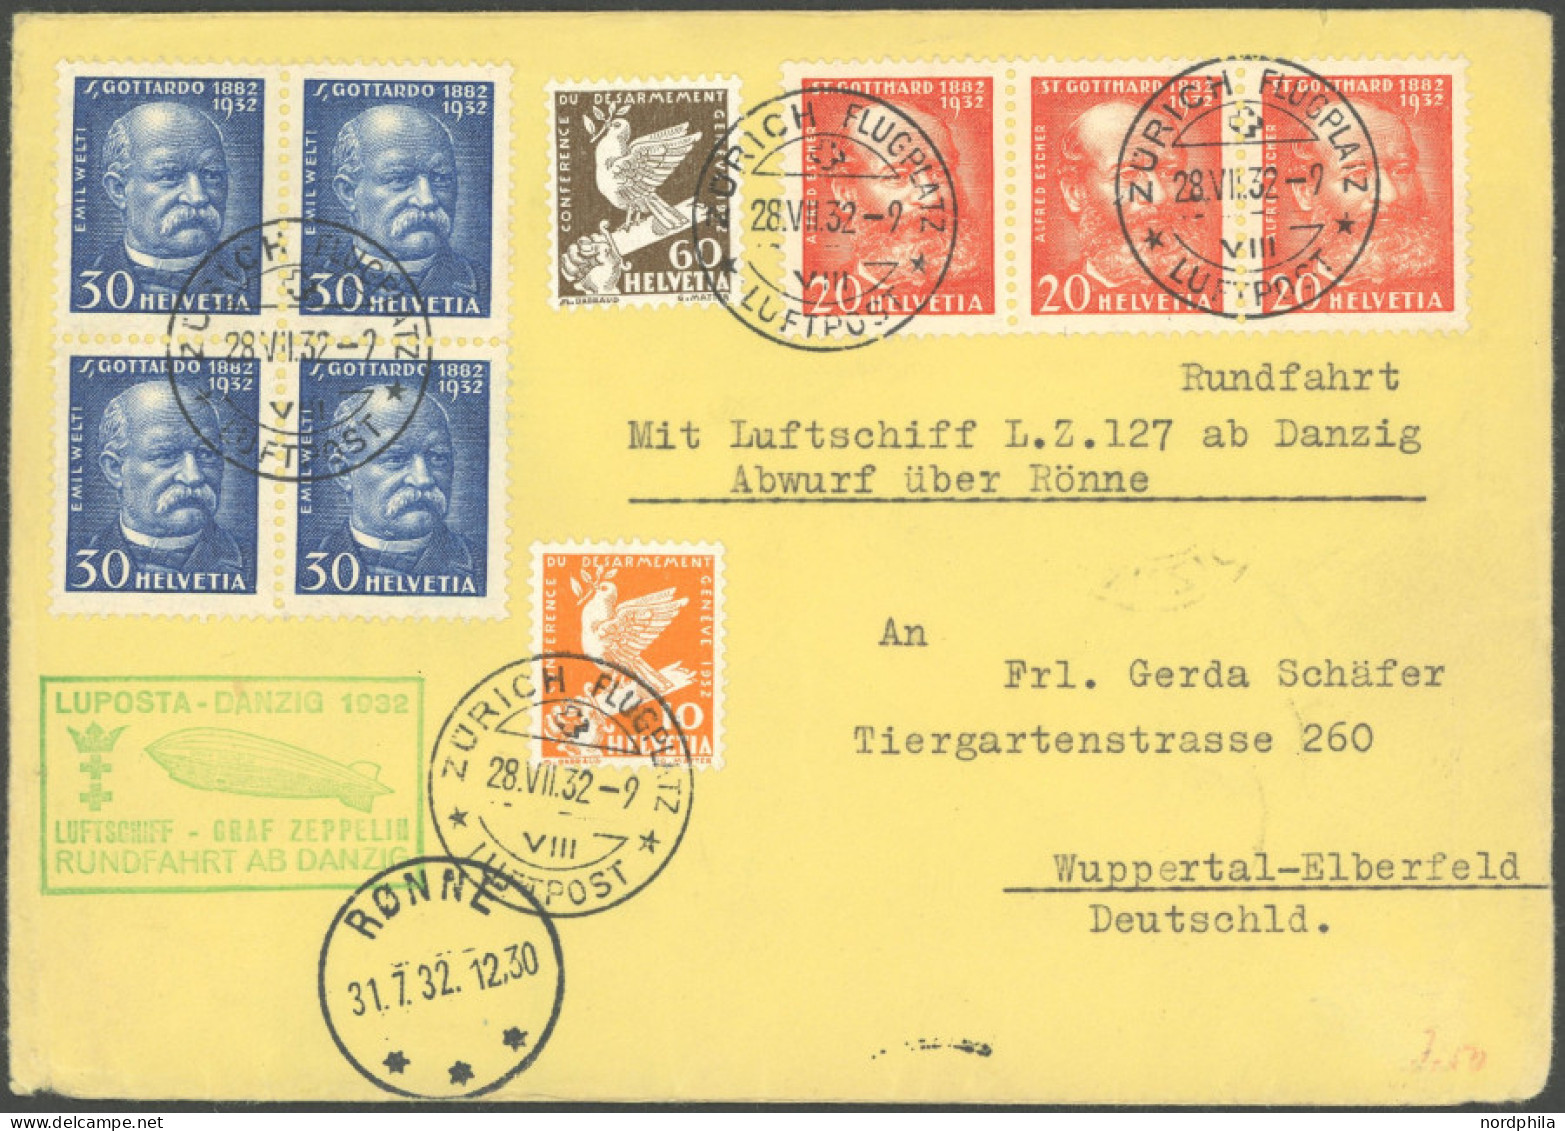 ZULEITUNGSPOST 170Aa BRIEF, Schweiz: 1932, Luposta-Rundfahrt, Abwurf Rönne, Leichte Beförderungsspuren, Prachtbrief - Posta Aerea & Zeppelin